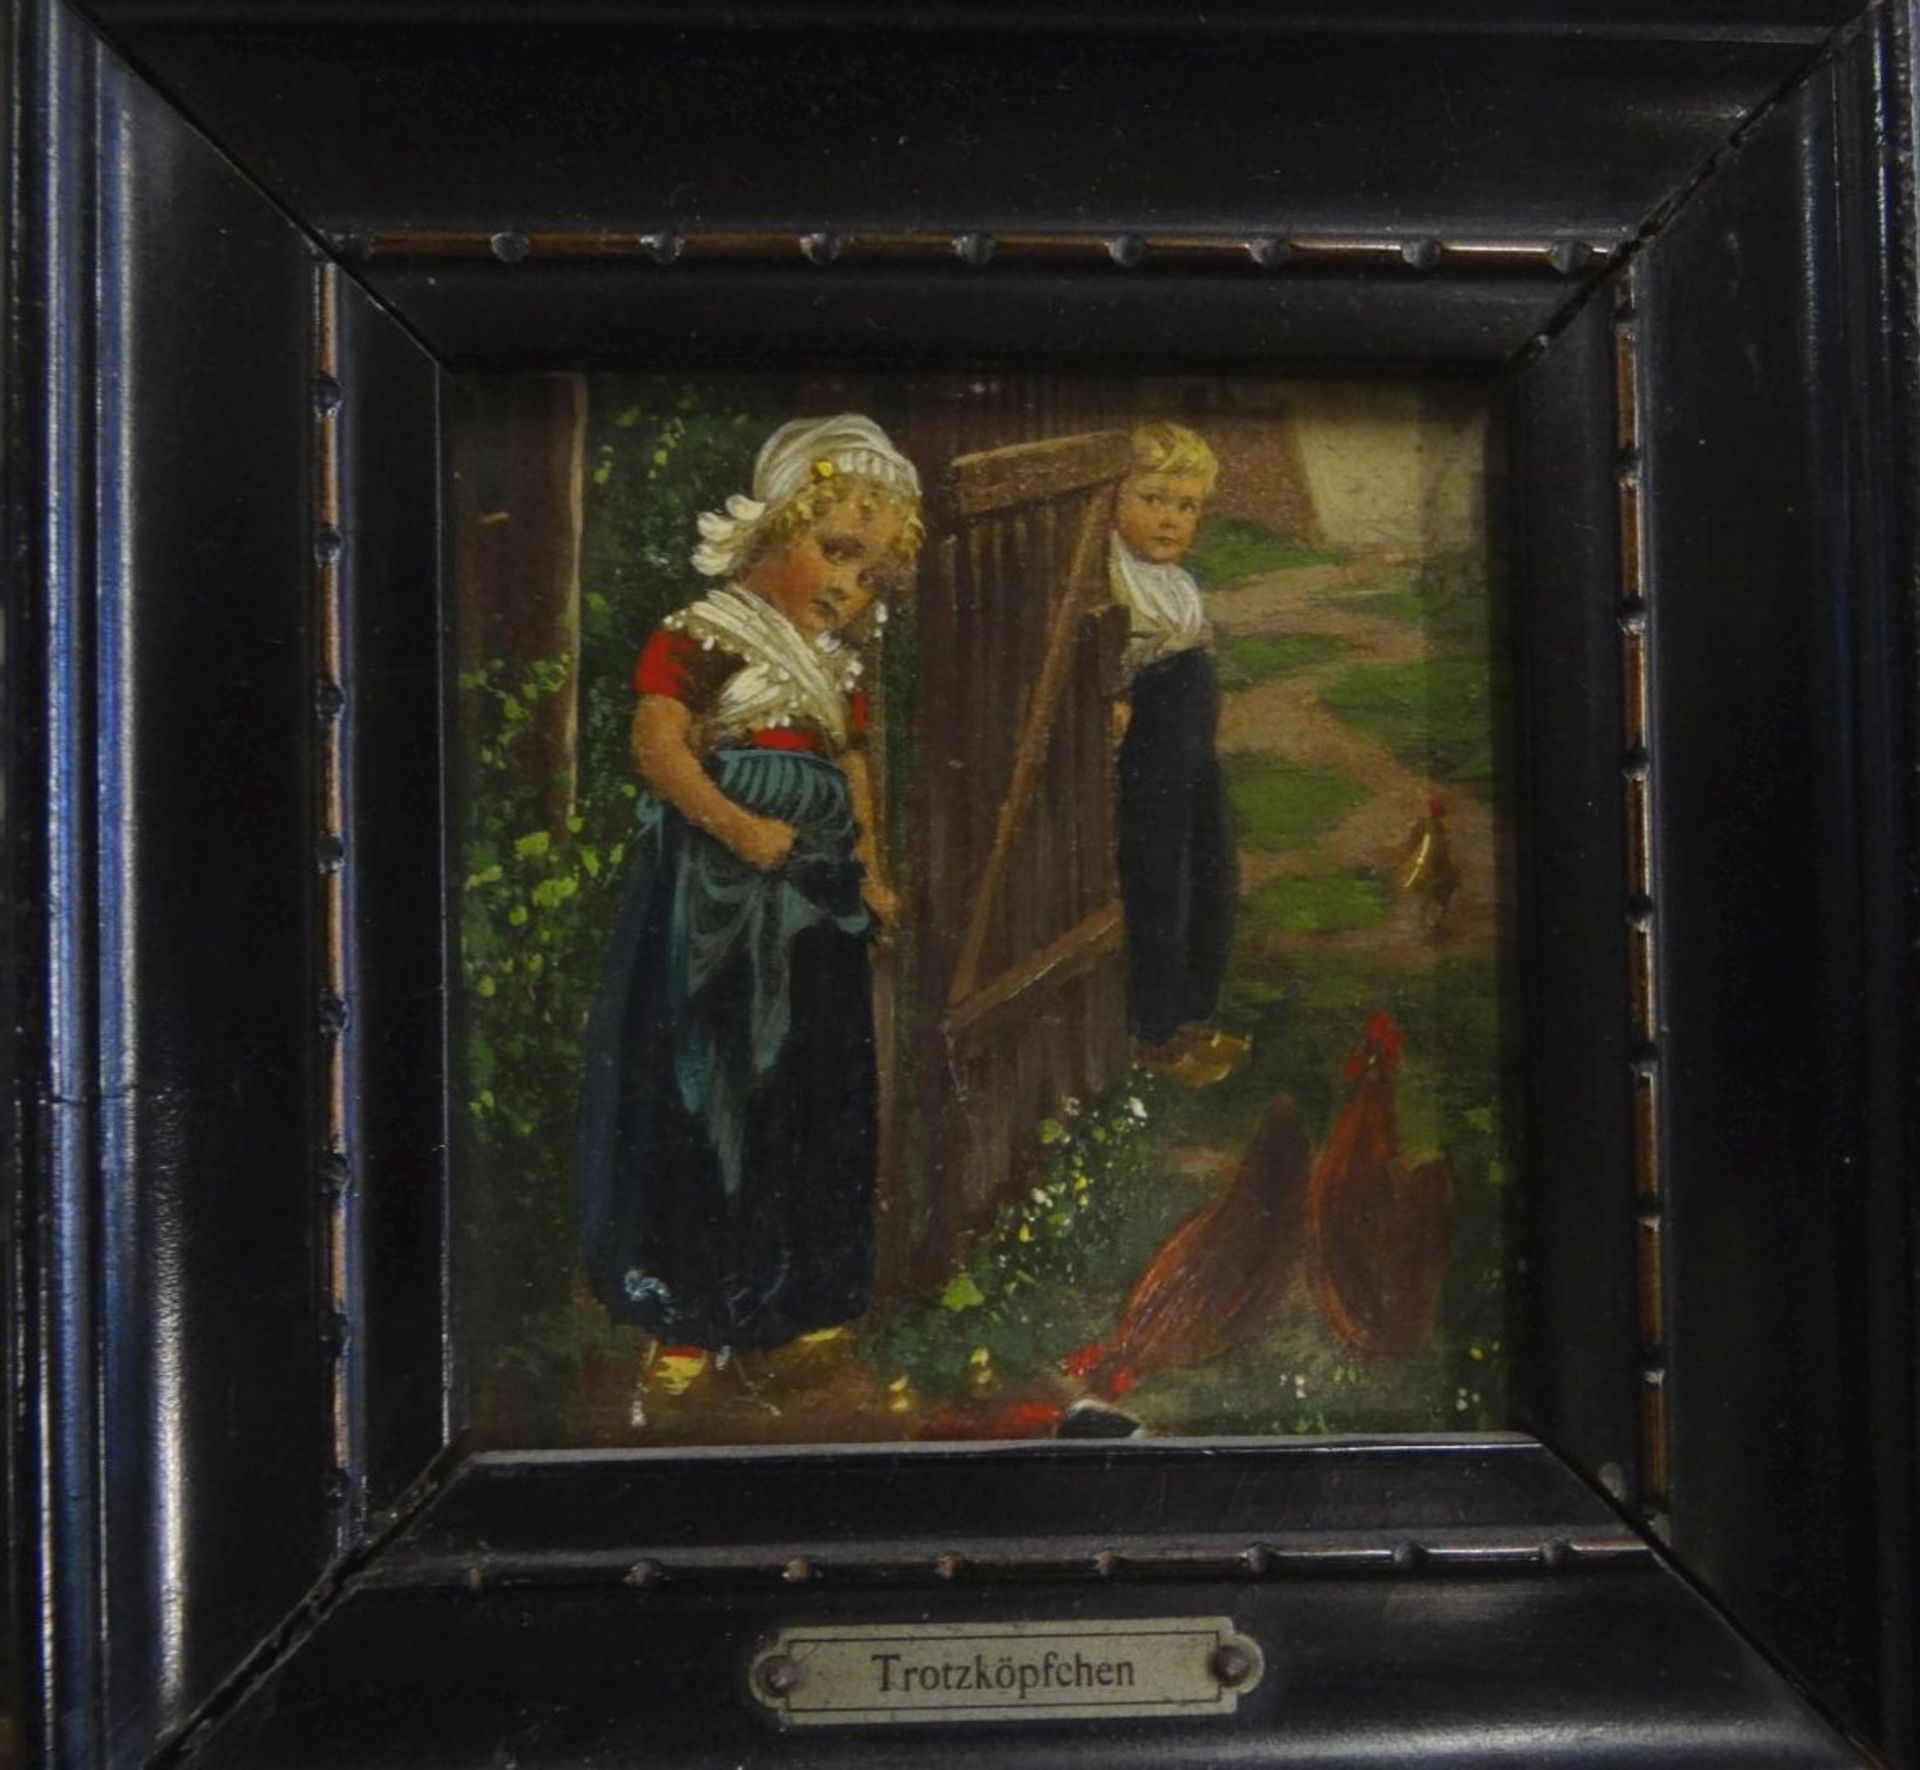 kl. anonymes Gemälde "Trotzköpfchen", gerahmt, 13x13- - -22.61 % buyer's premium on the hammer